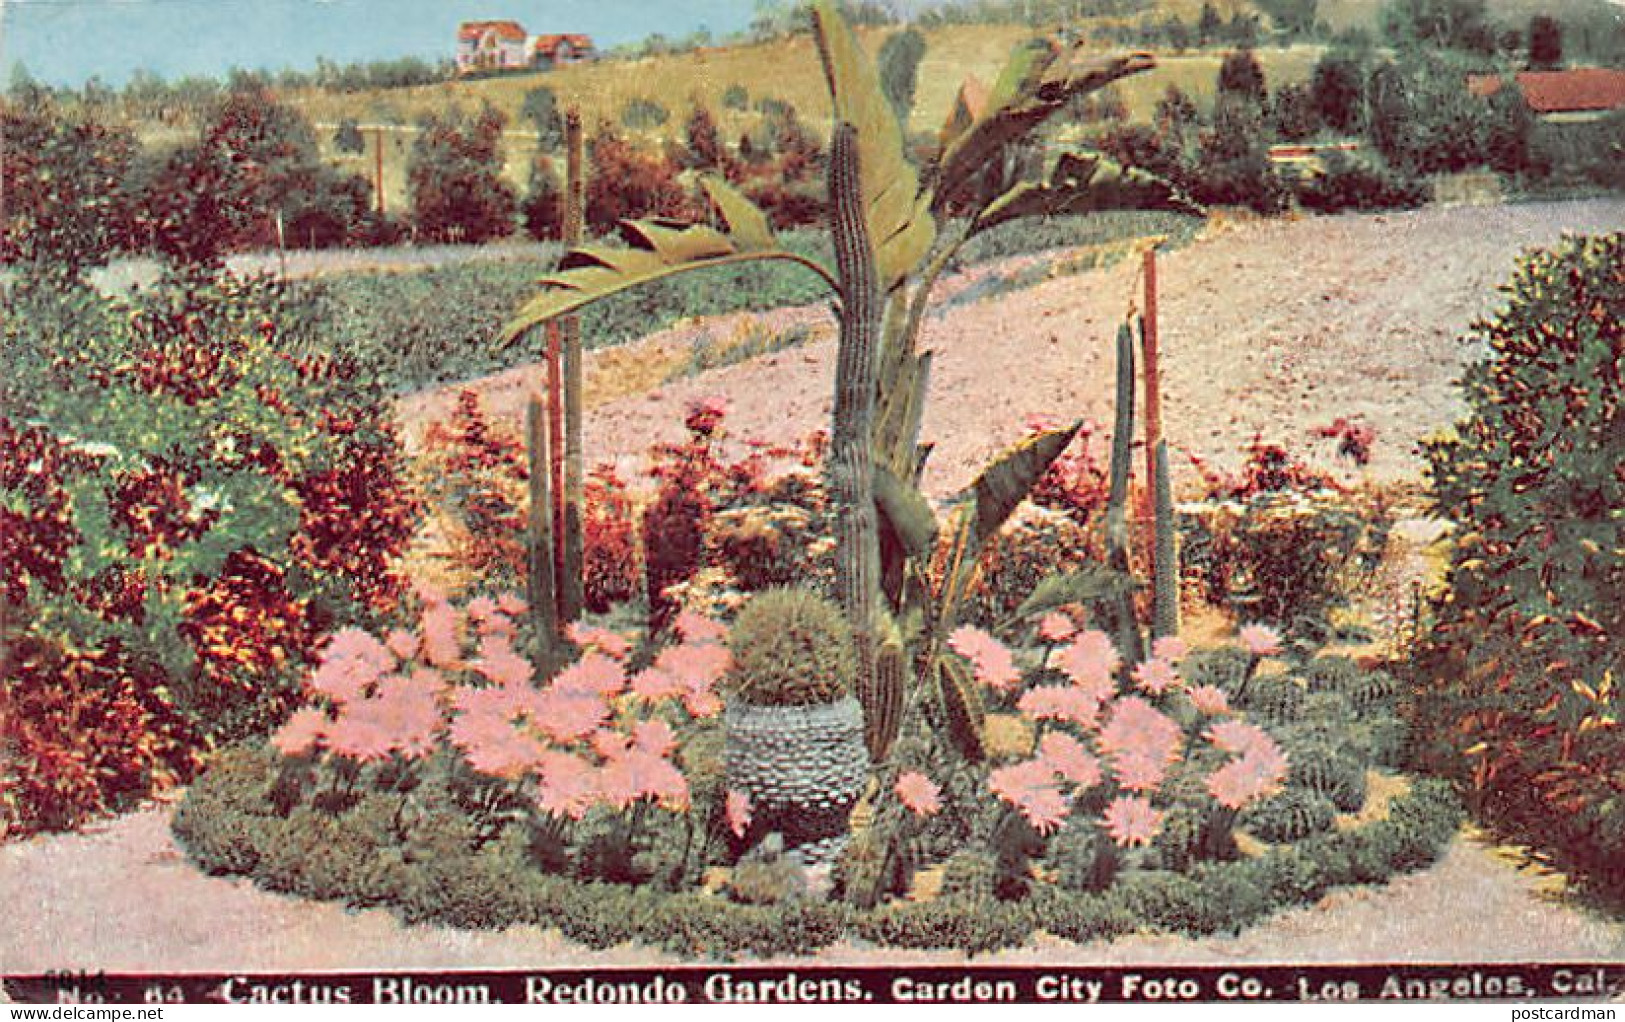 Usa - LOS ANGELES (CA) Cactus Bloom, Redondo Gardens, Garden City Foto Co. - Publ. Williamson Haffner Co. 64 - Los Angeles